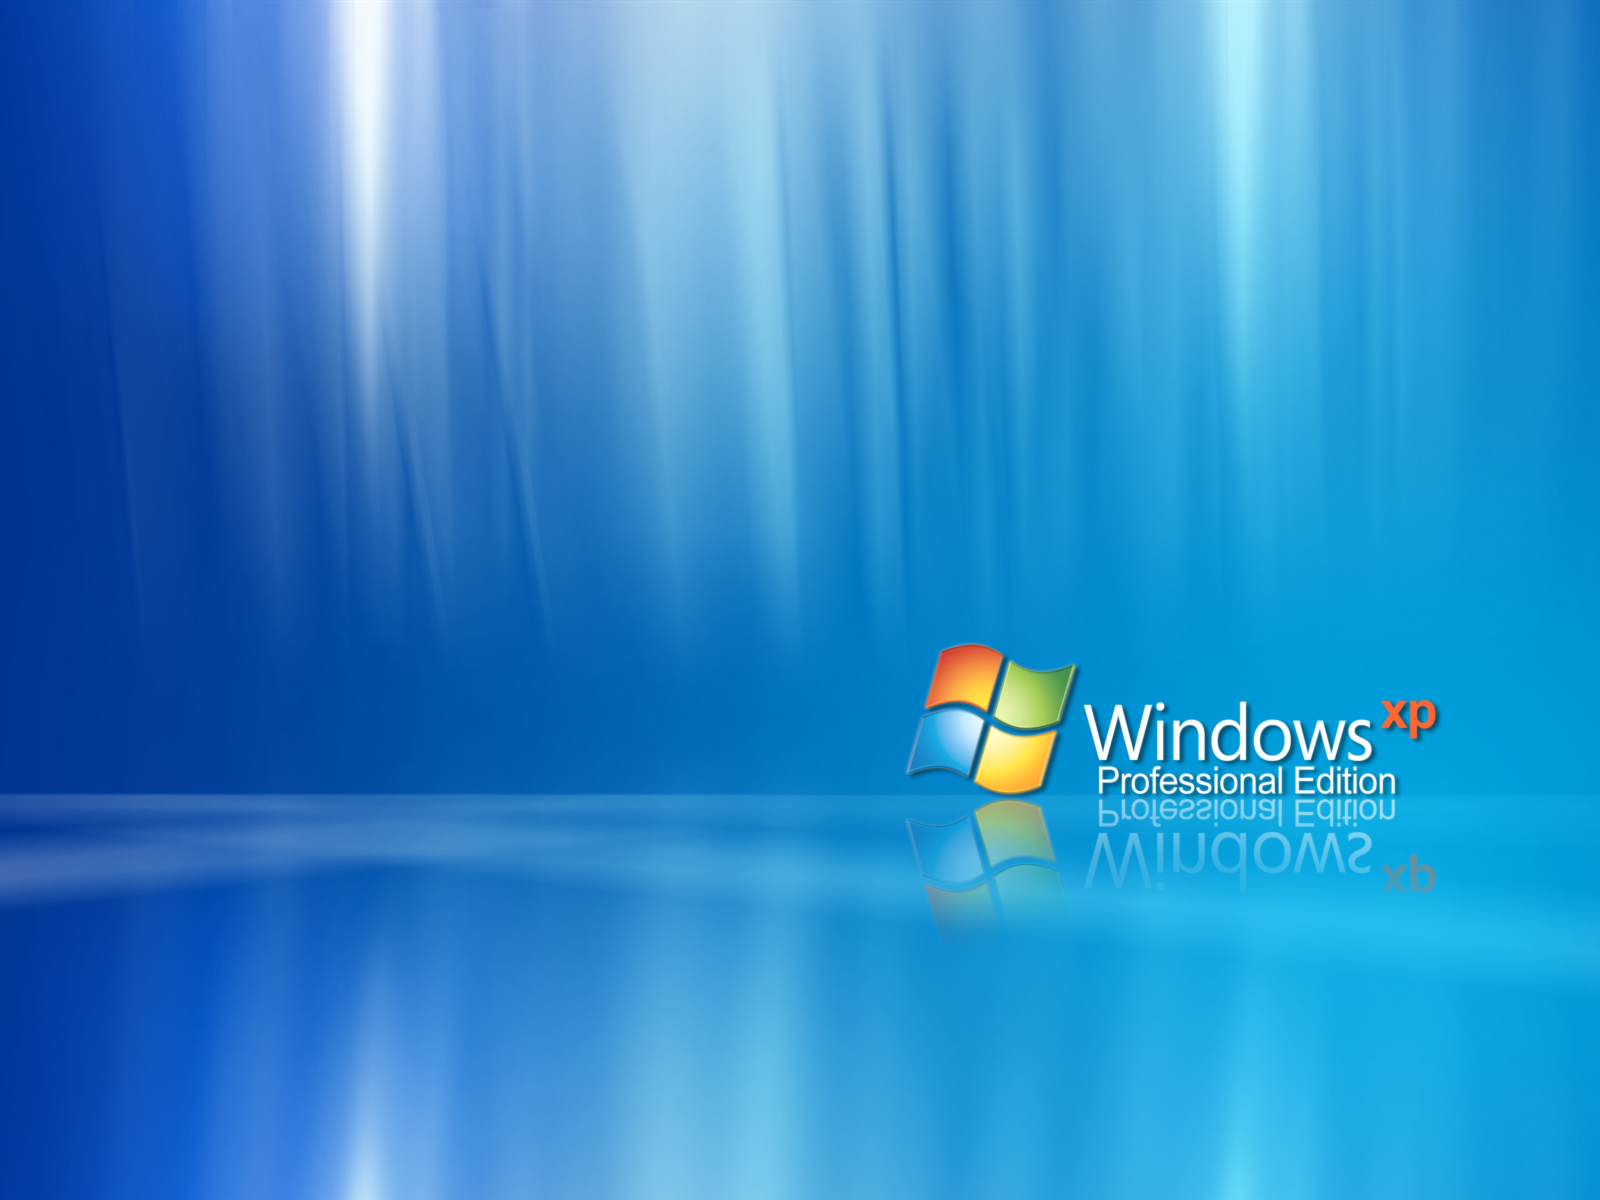 Windows Xp Wallpaper 3d